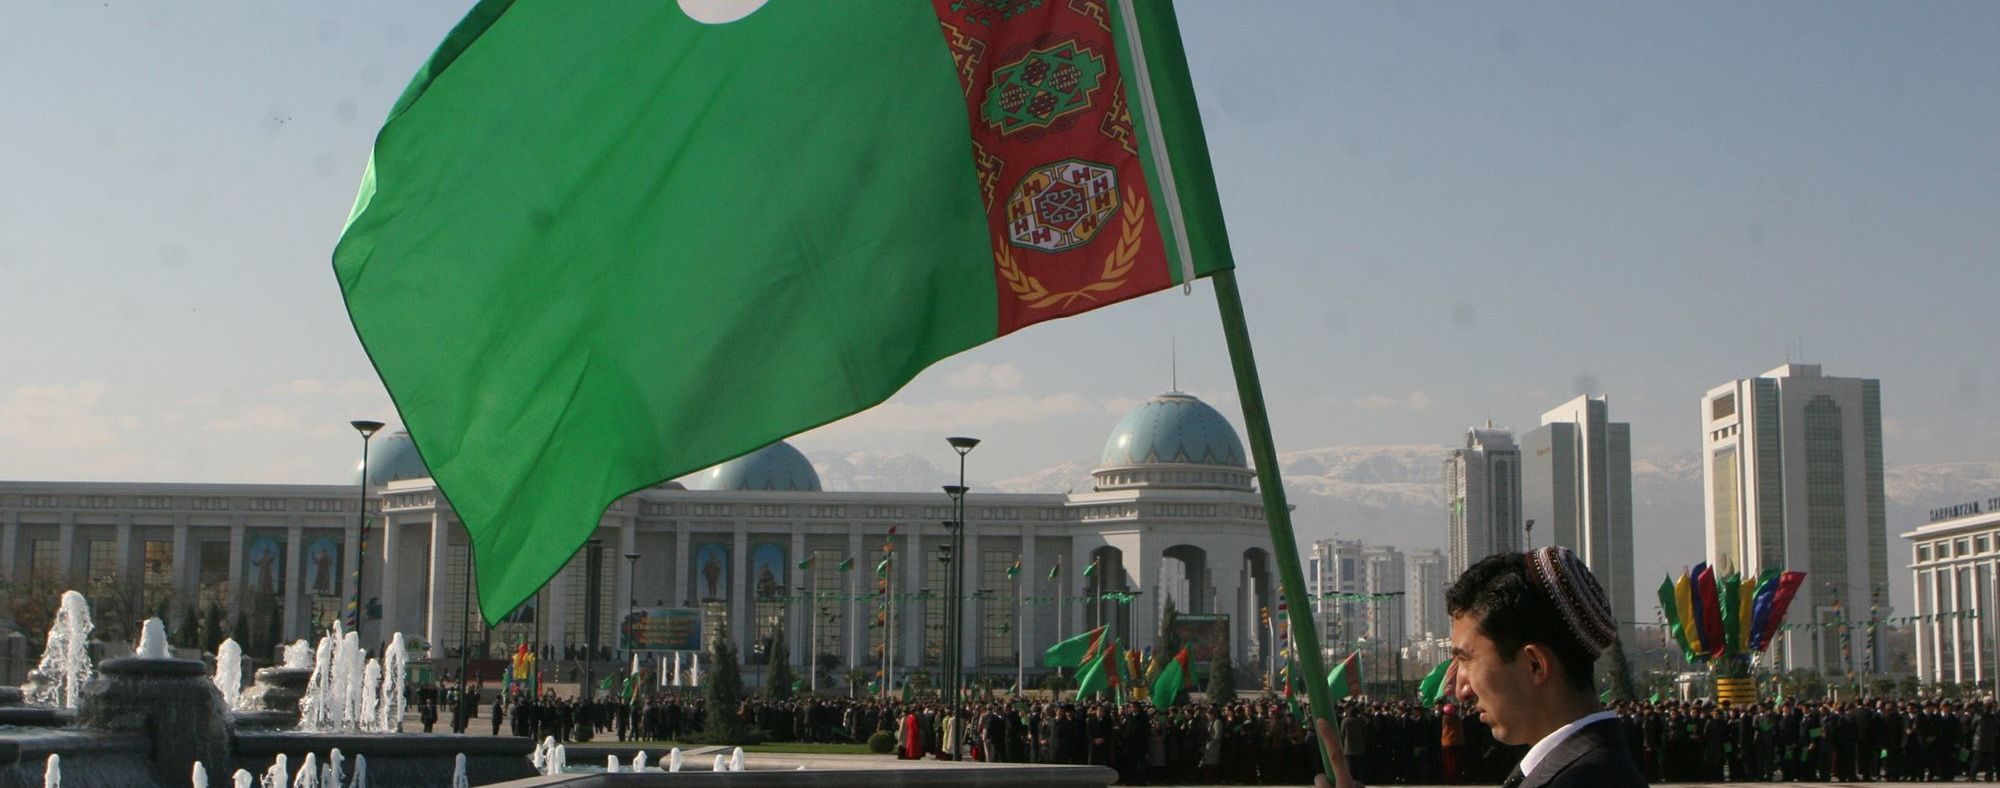 Борьба с пандемией по-туркменски: власти запретили слово "коронавирус" и задерживают людей в масках